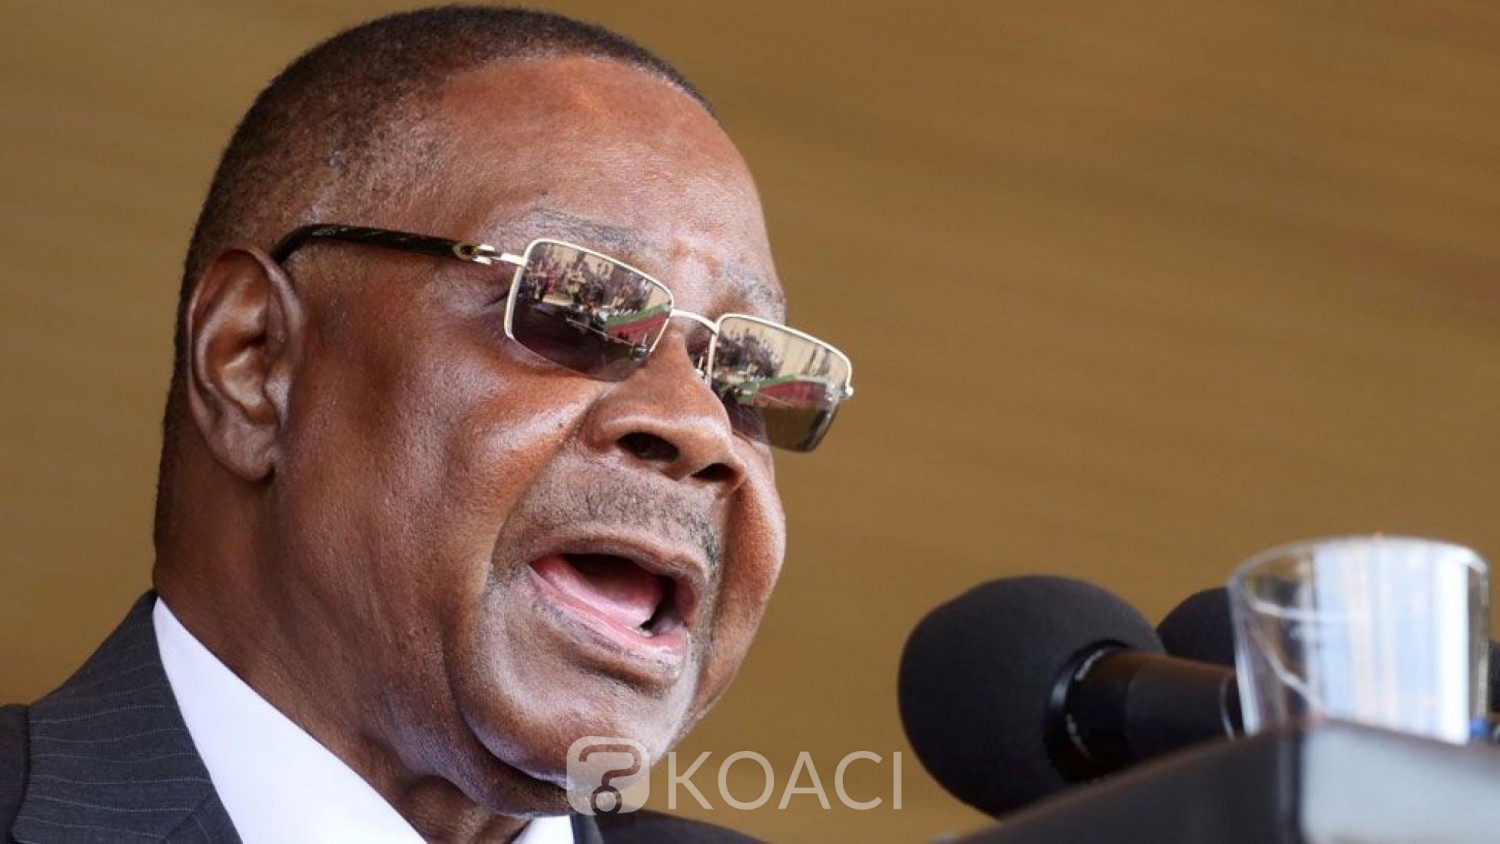 Malawi : Covid-19, le chef de l' Etat annonce la baisse de son salaire et celui de ses ministres